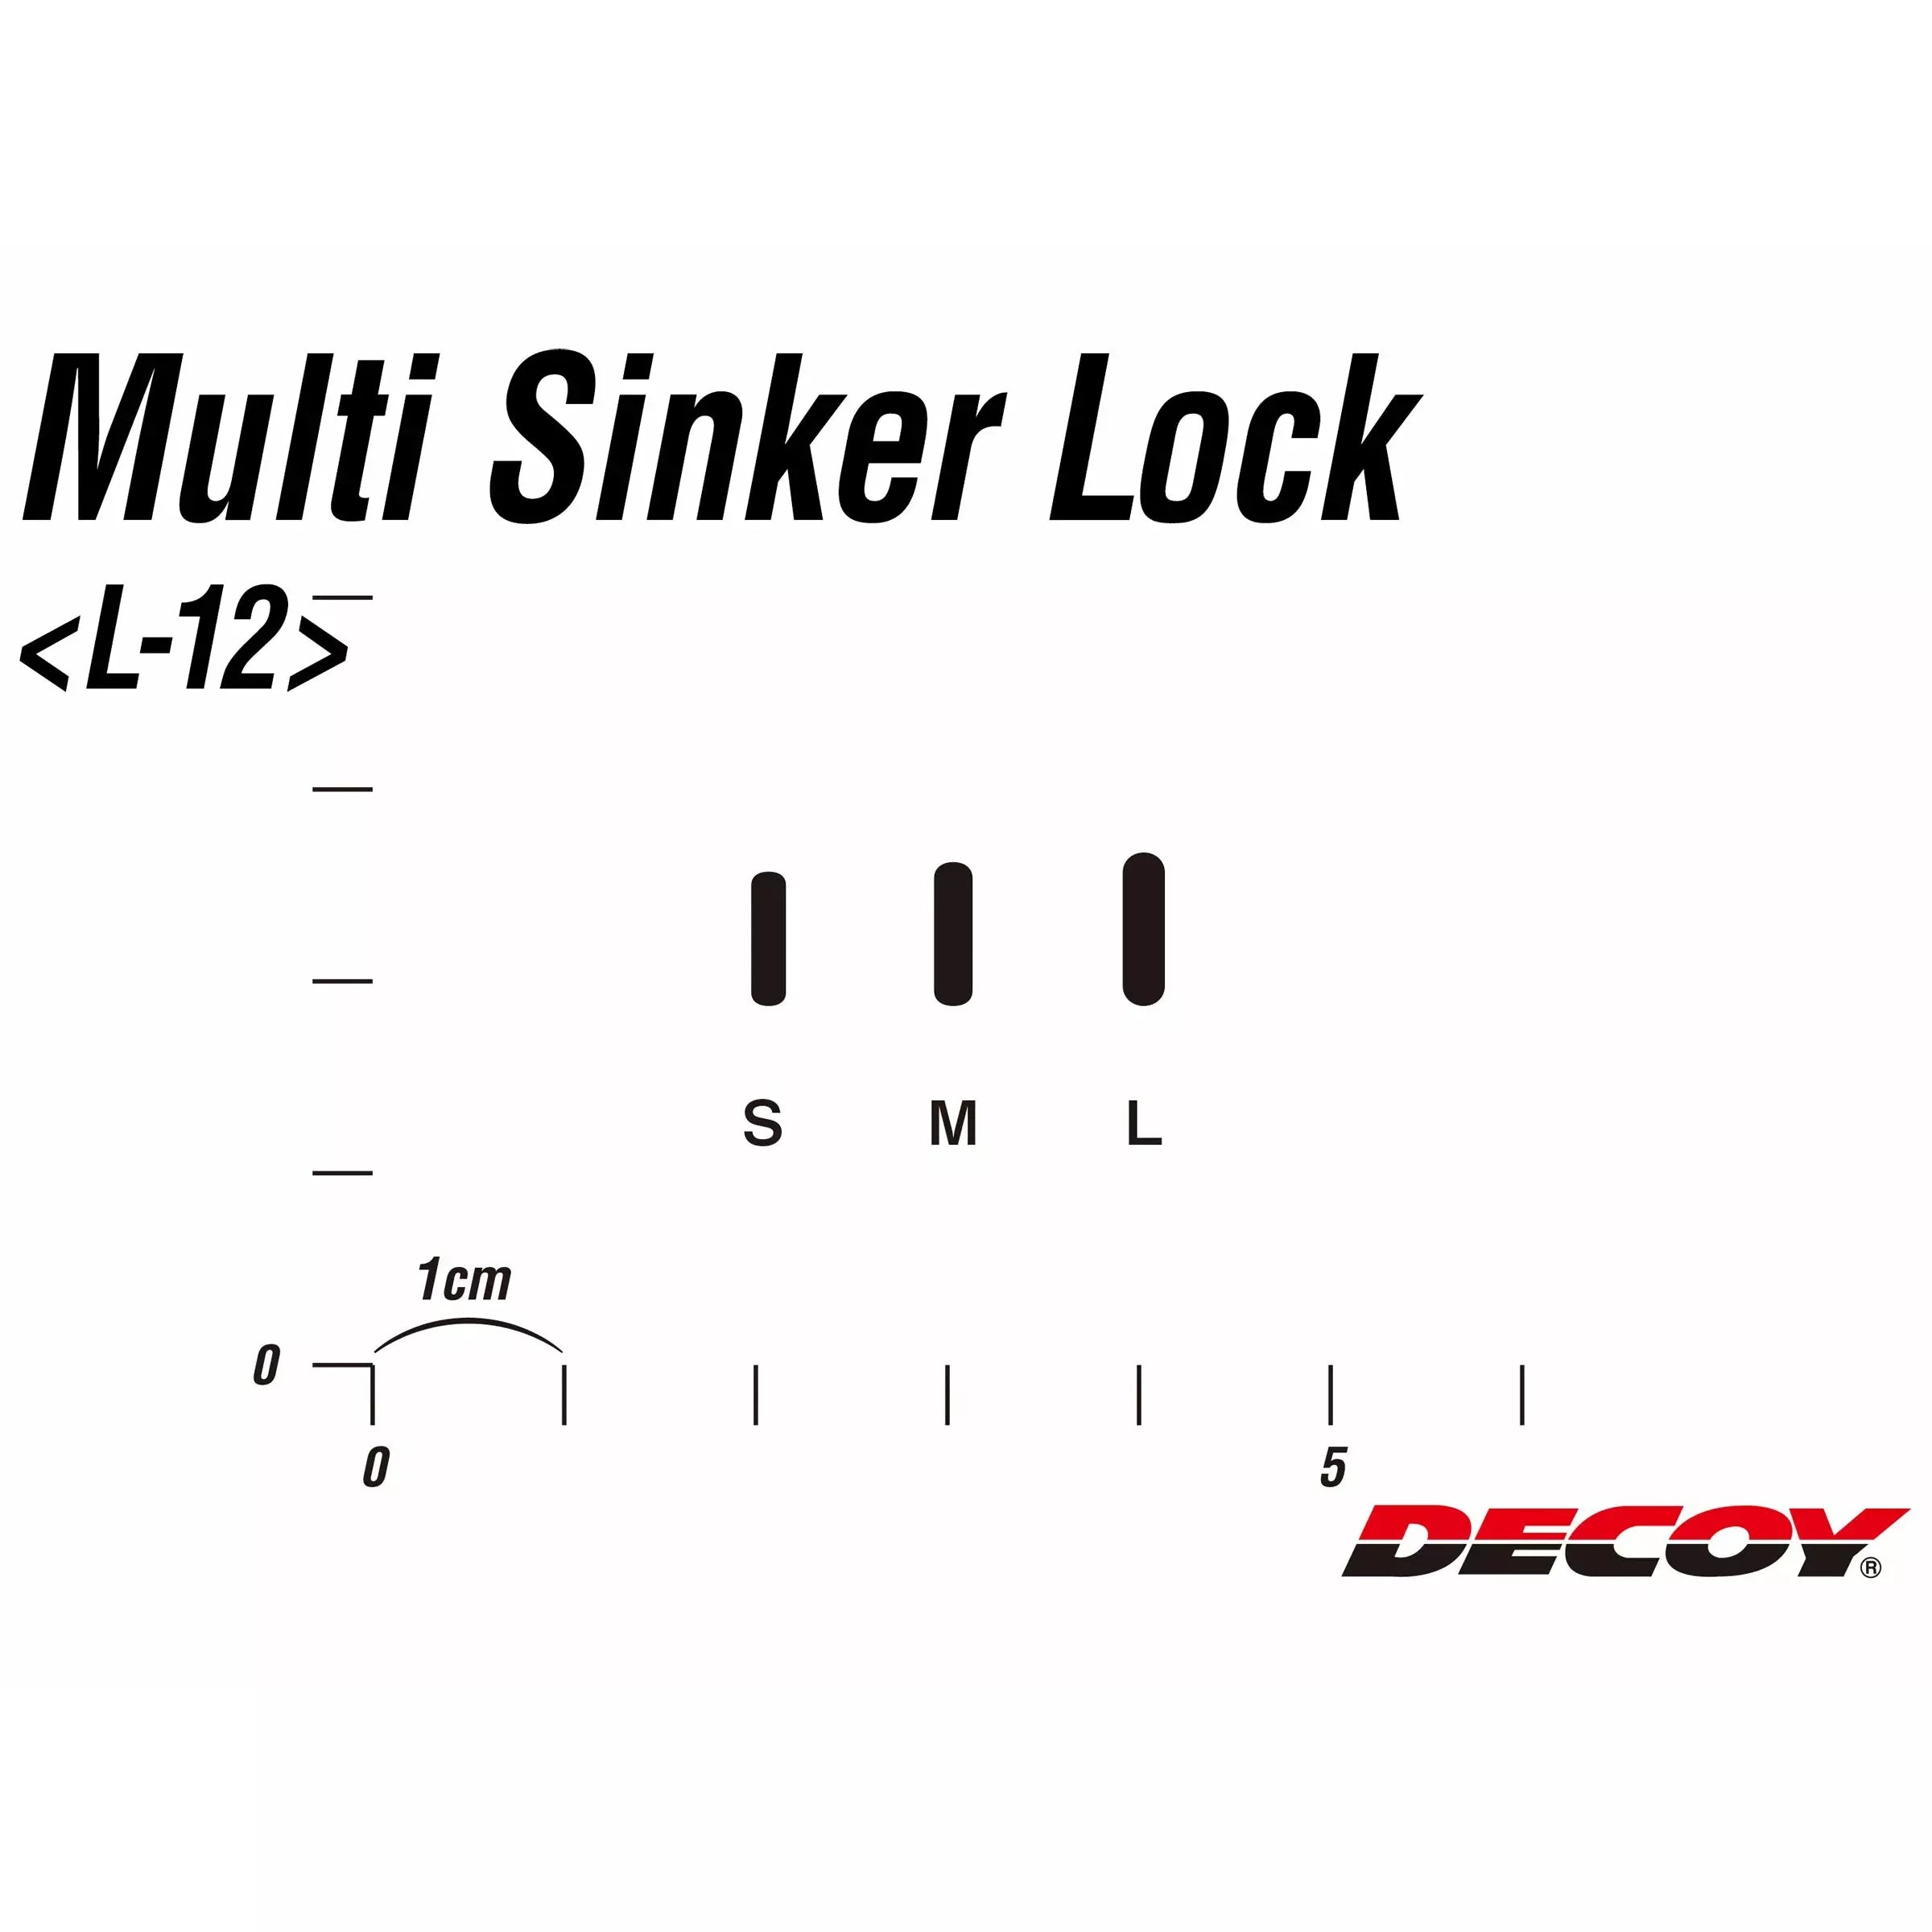 DECOY L-12 MULTI SINKER LOCK PEGS 18PK - 0